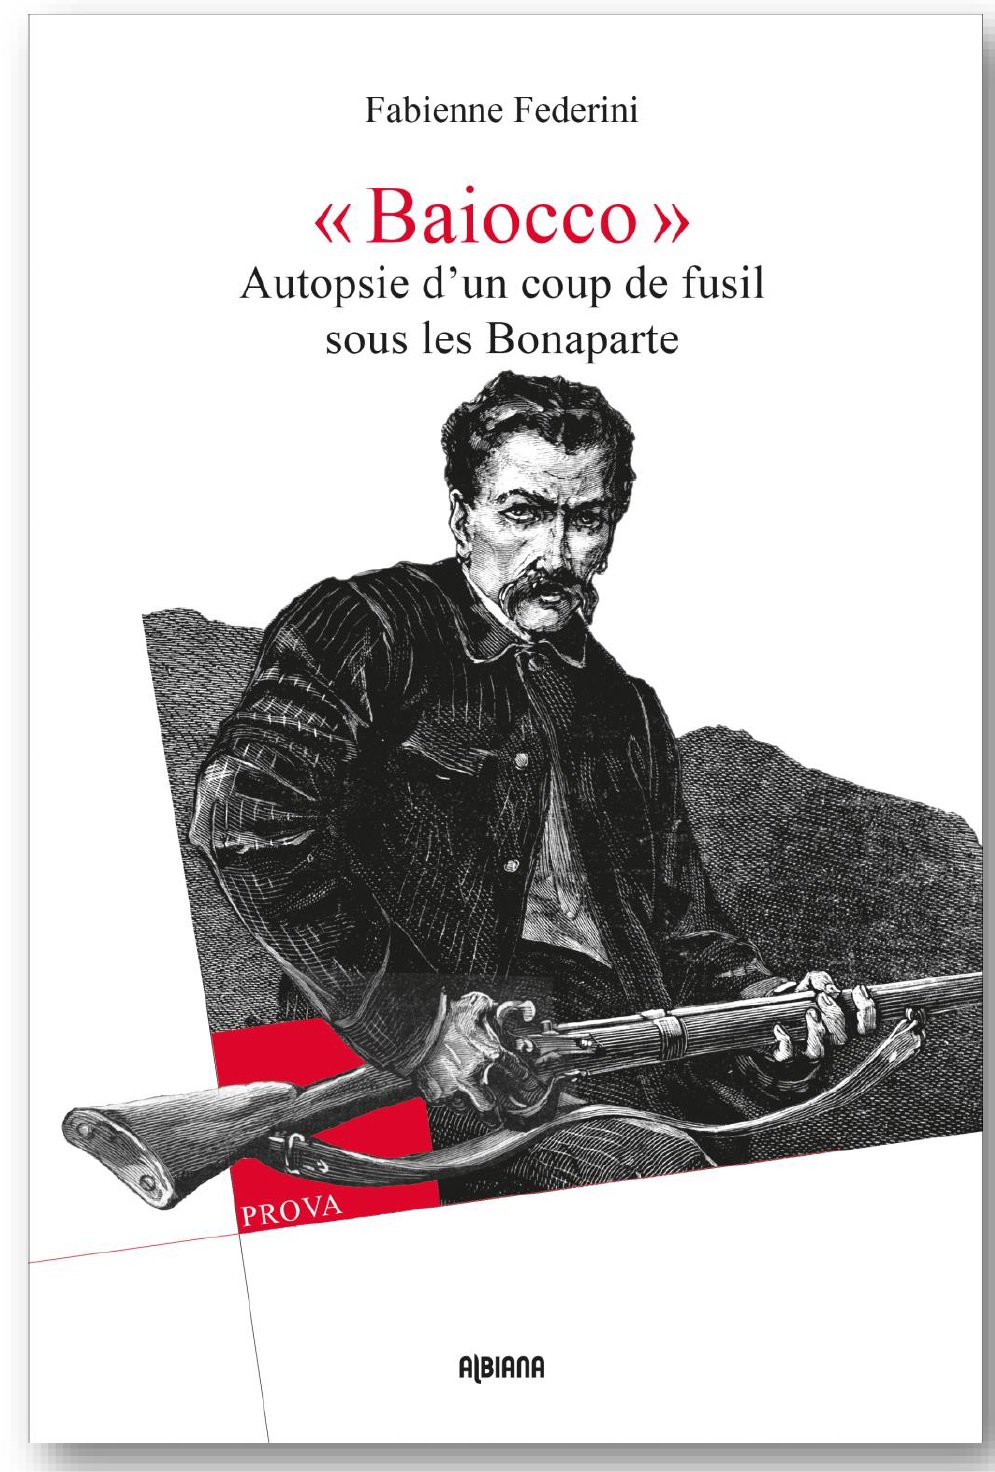 Sortie du livre de Fabienne Federini : "Baiocco - Autopsie d’un coup de fusil sous les Bonaparte"